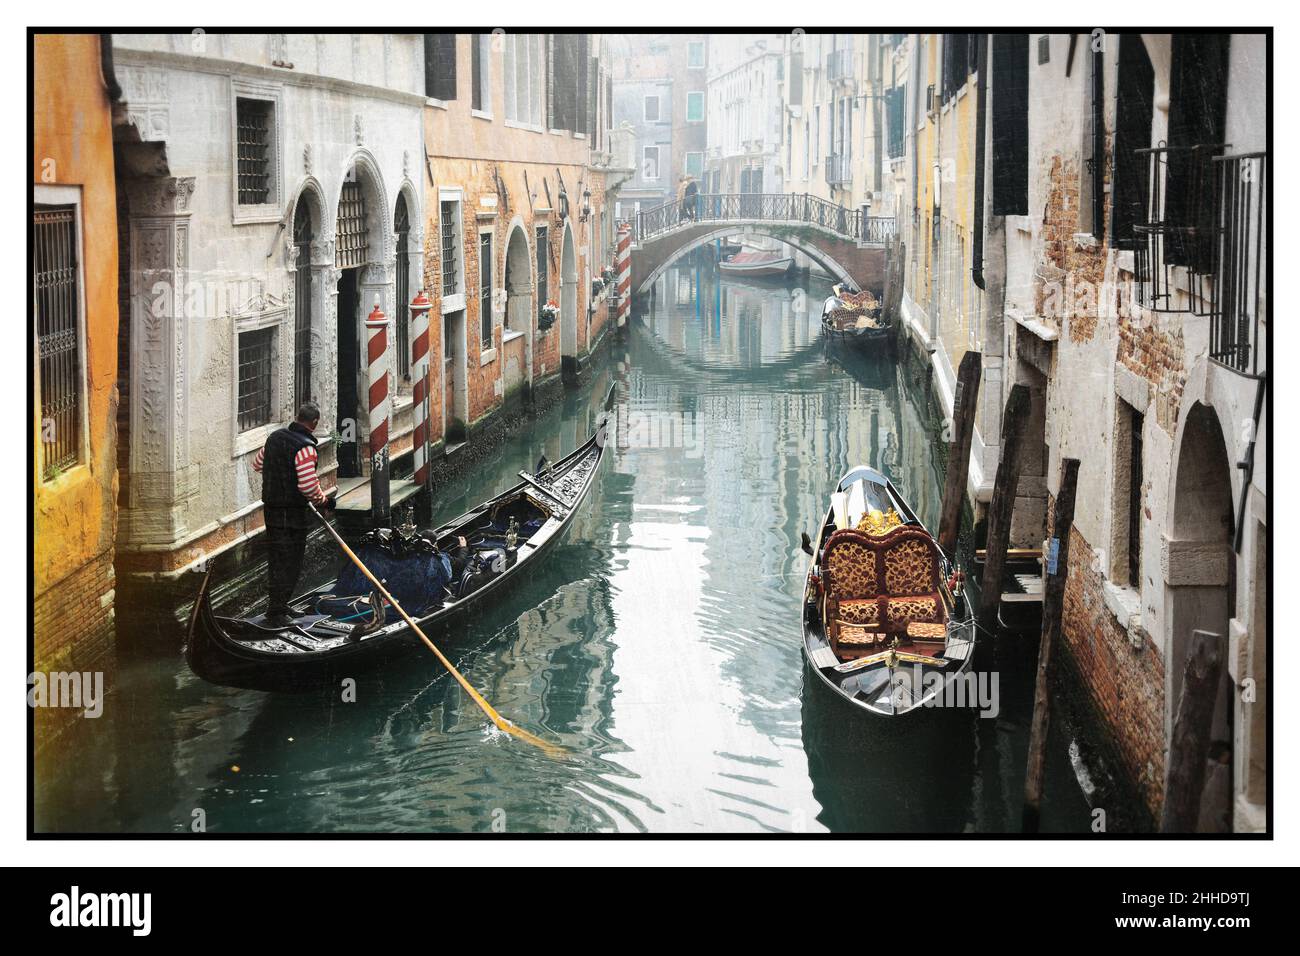 Romantique canaux vénitiens.Vieilles rues étroites de Venise.Trajet en gondole.Image rétro.Italie Banque D'Images